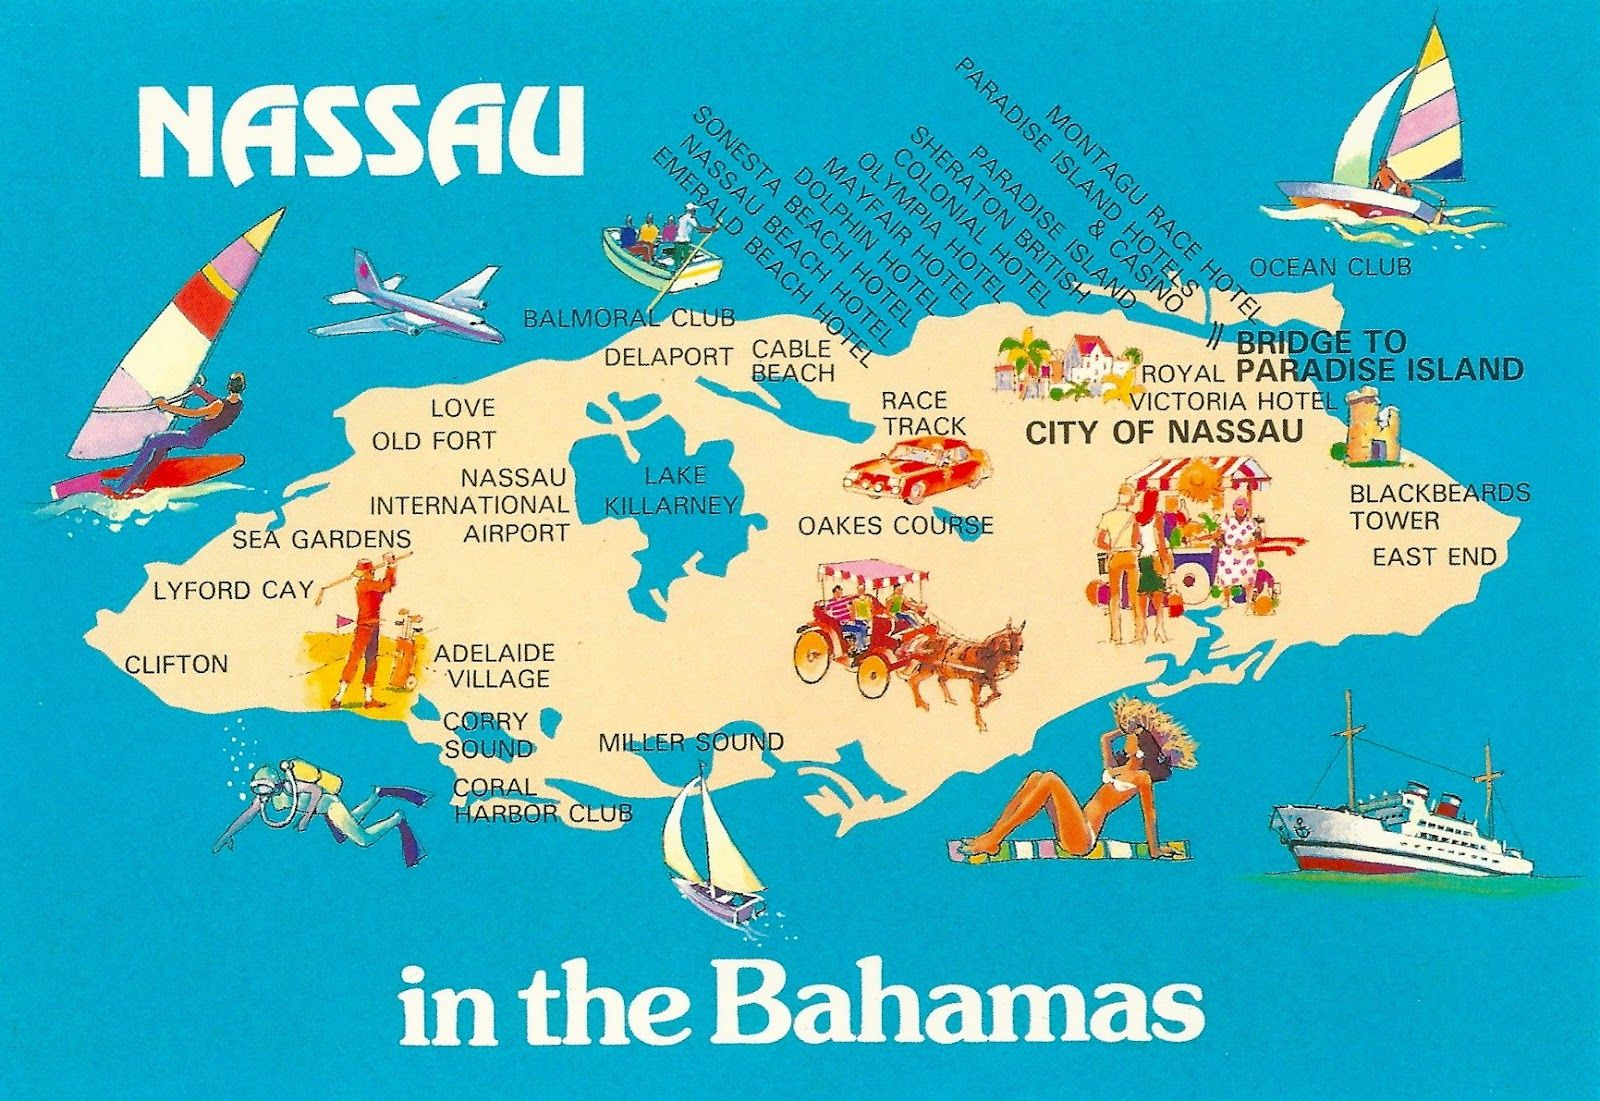 Bahamas Nassau Map Bahamas Travel Nassau Bahamas Bahamas Cruise